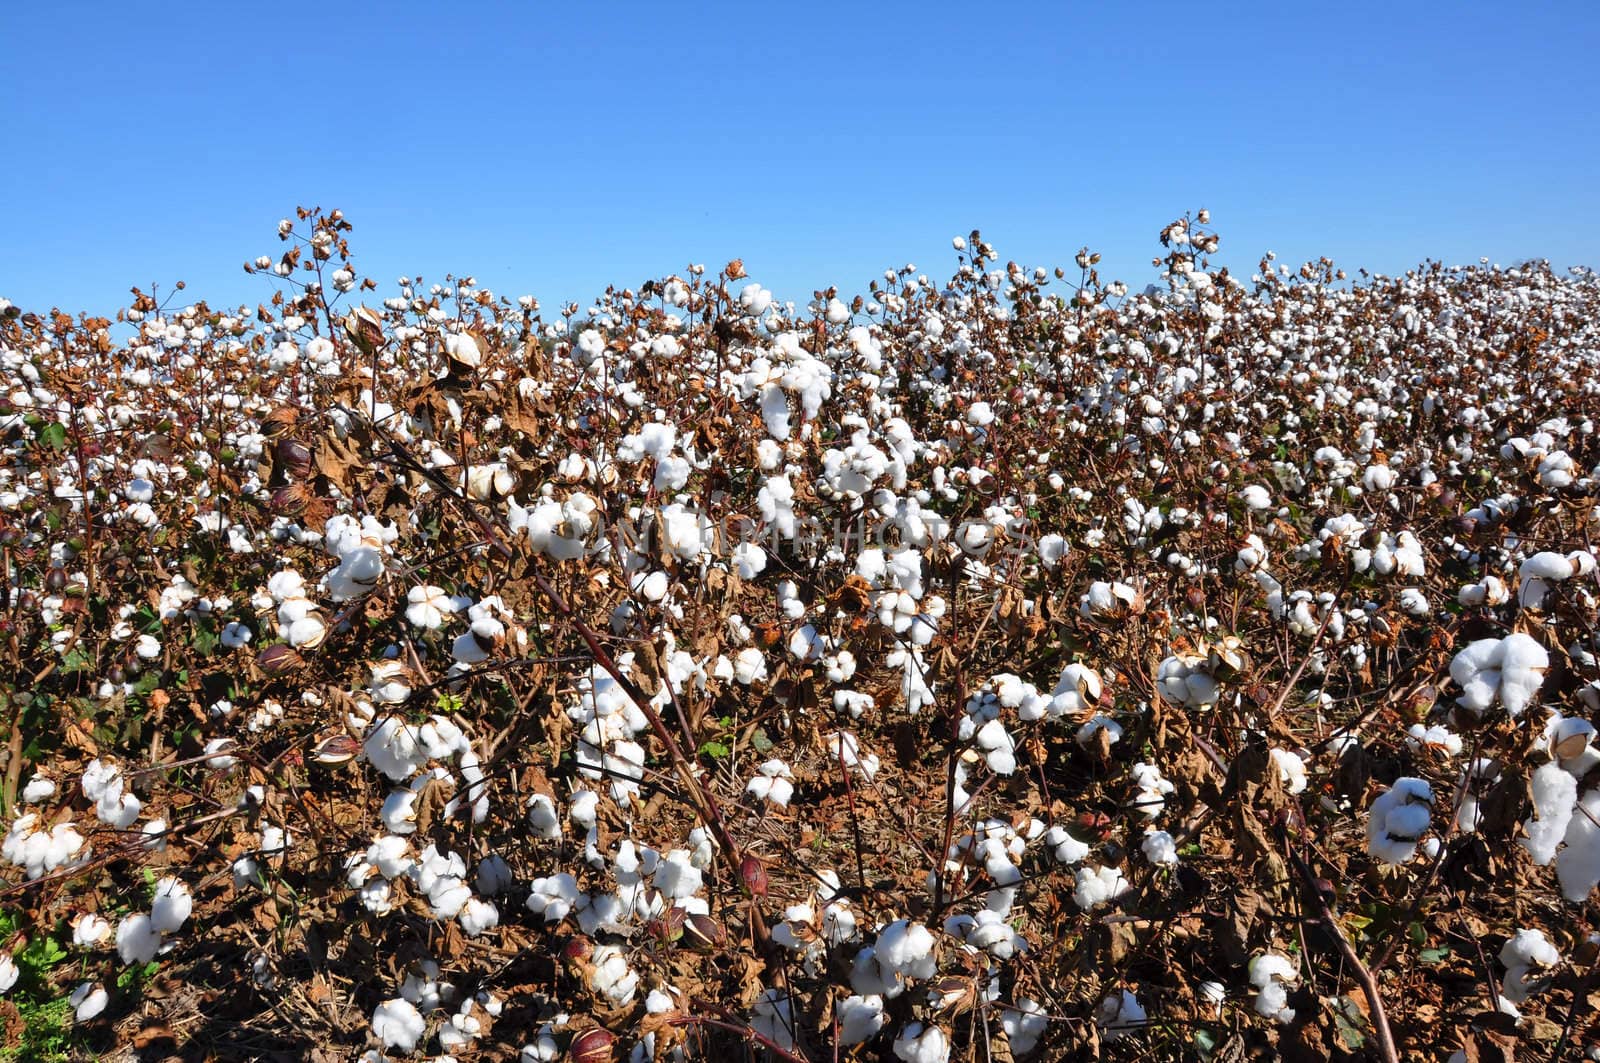 Cotton Field by dehooks